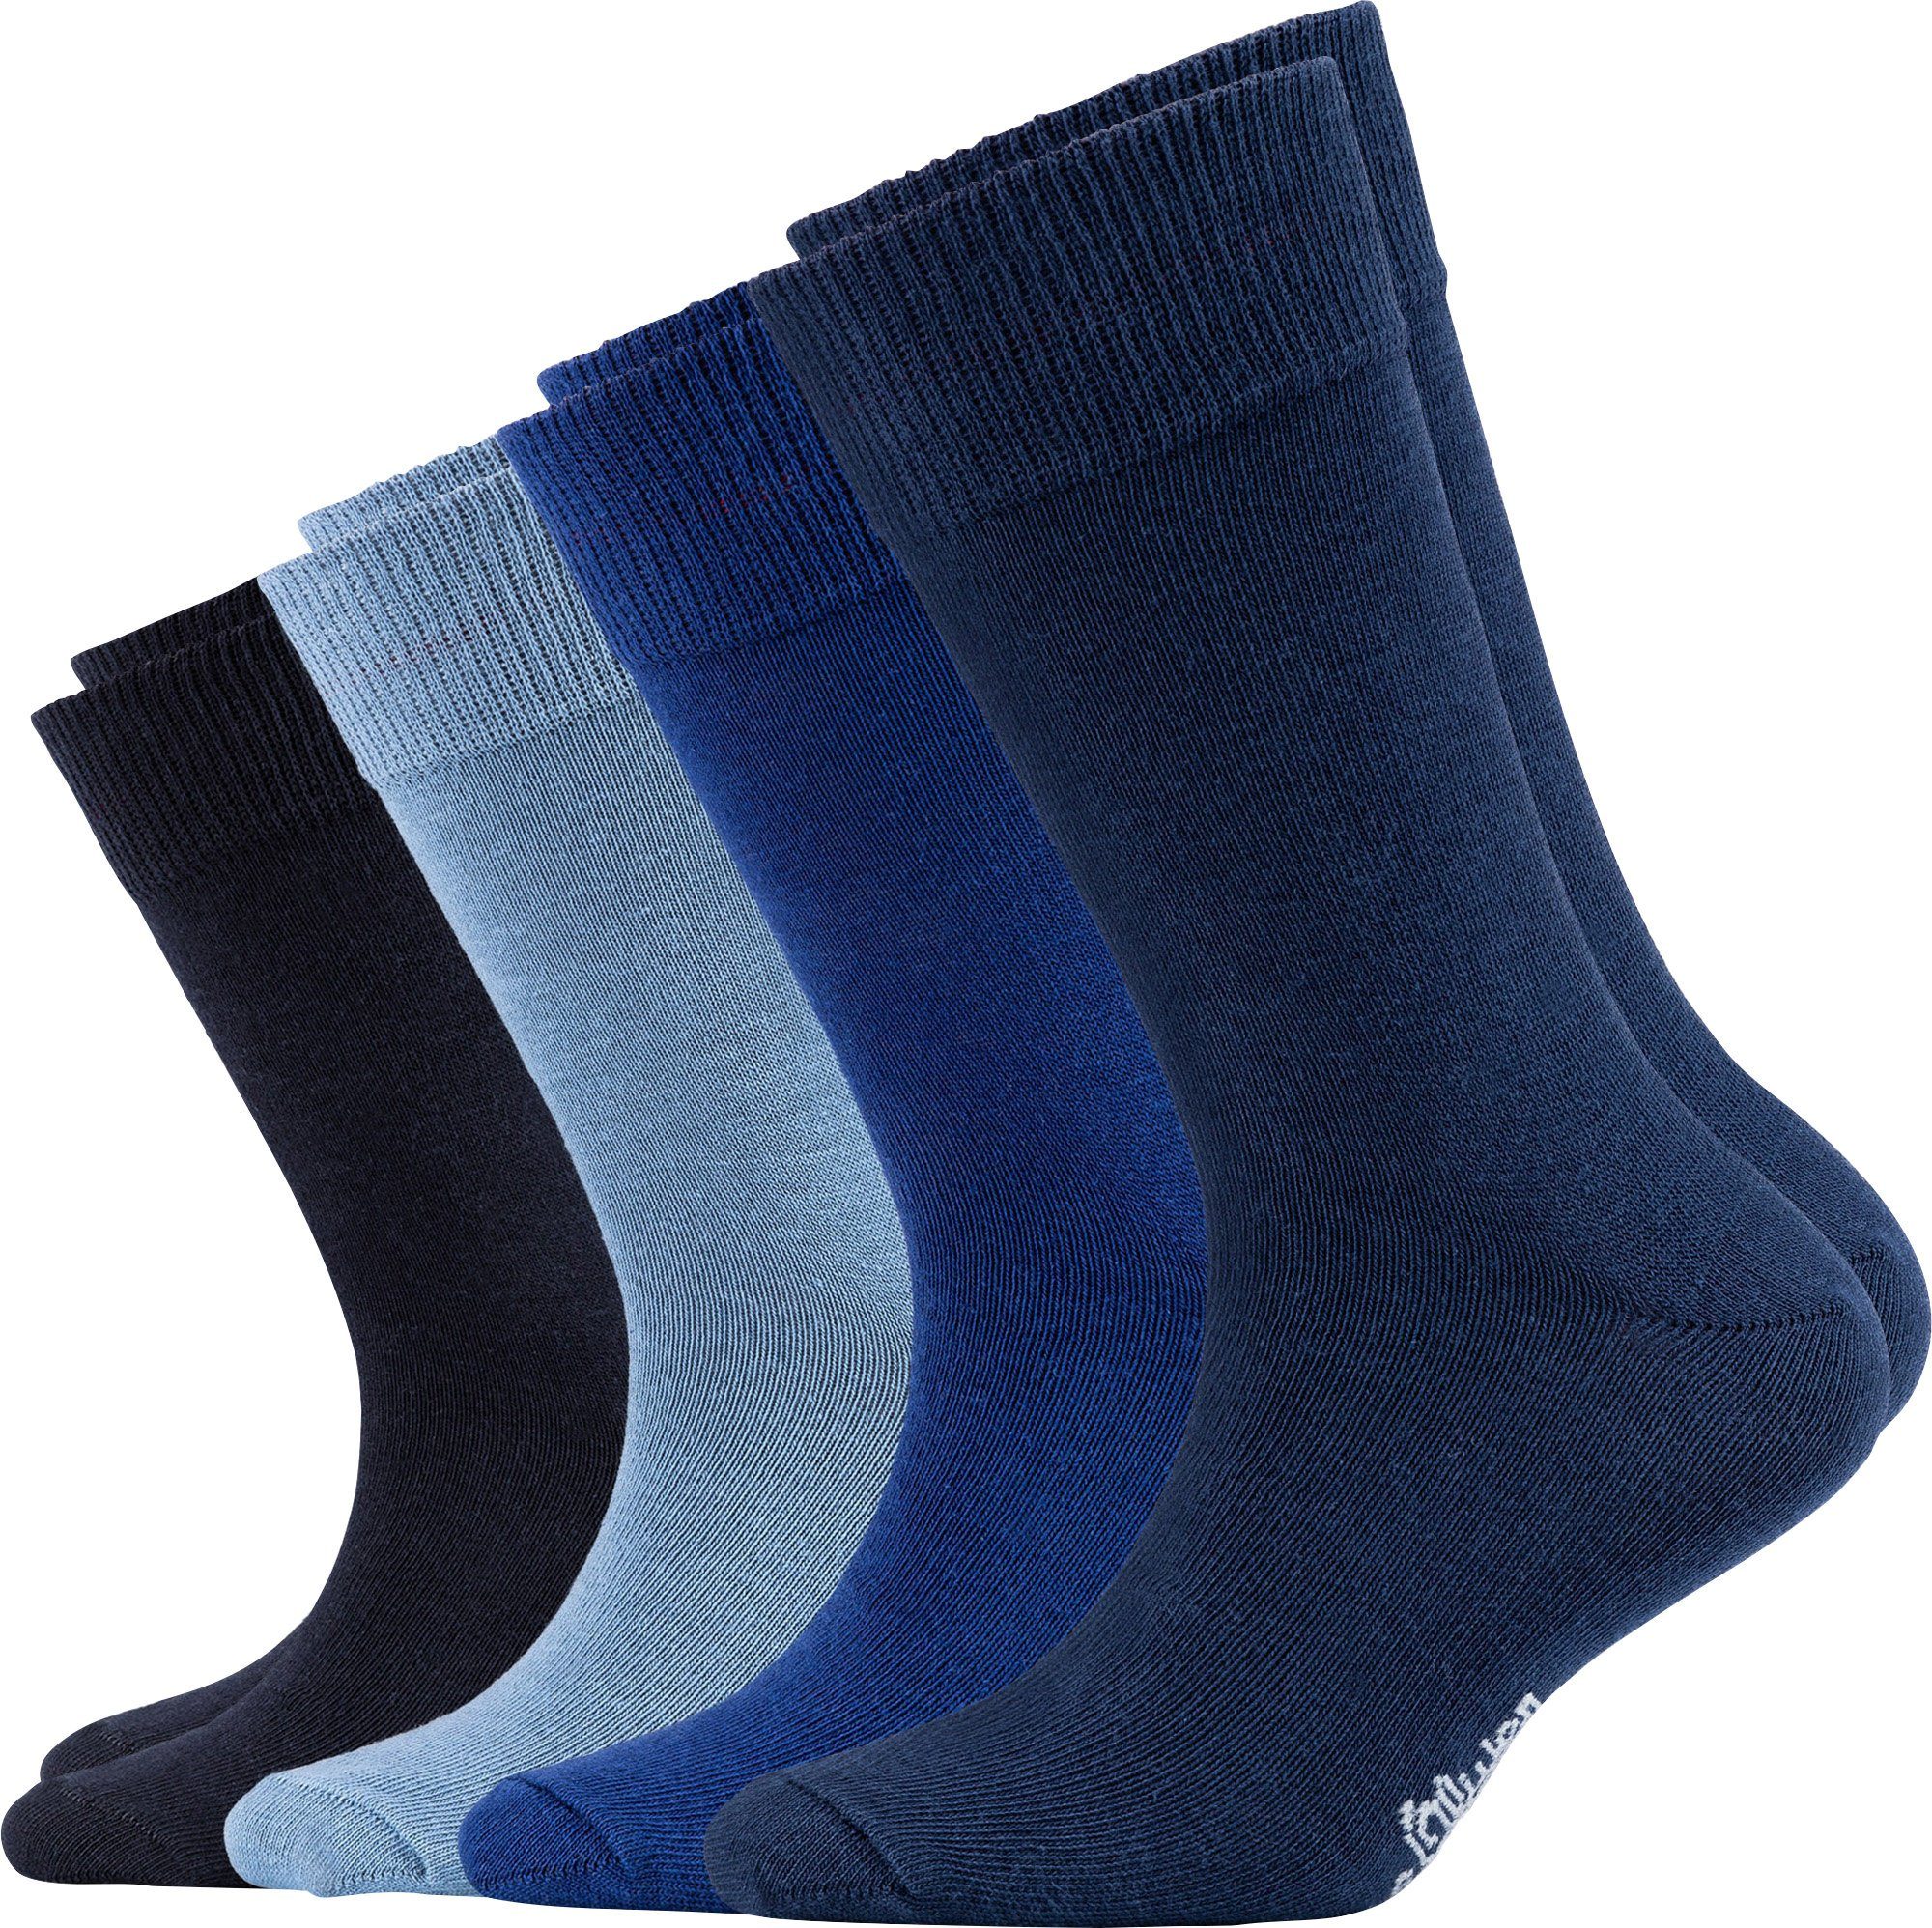 s.Oliver Socken Kinder-Socken 4 Paar Uni marine/blau